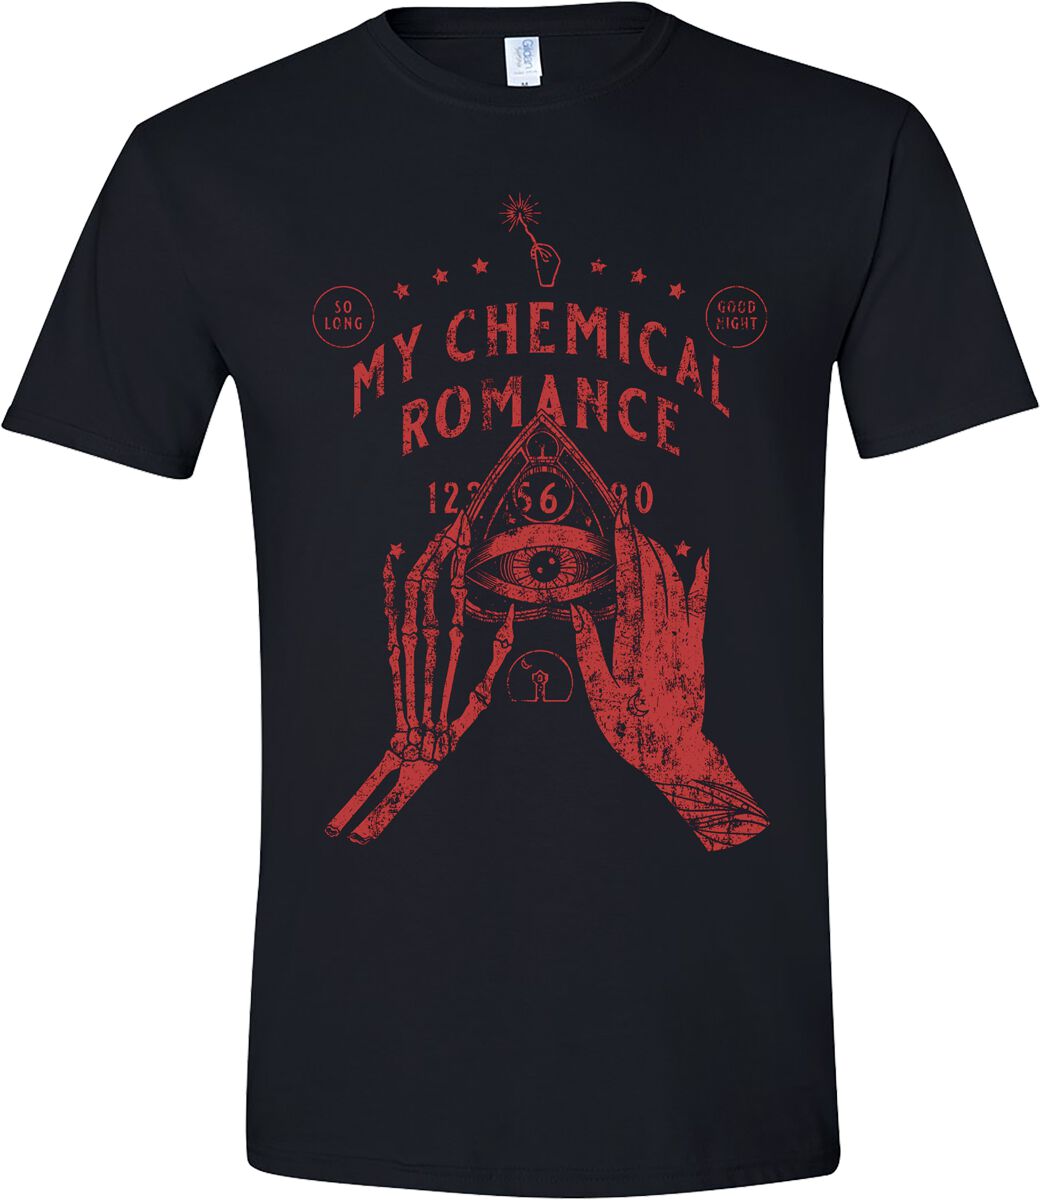 My Chemical Romance T-Shirt - Skeleton Planchette (Red Print) - S bis M - für Männer - Größe S - schwarz  - Lizenziertes Merchandise!